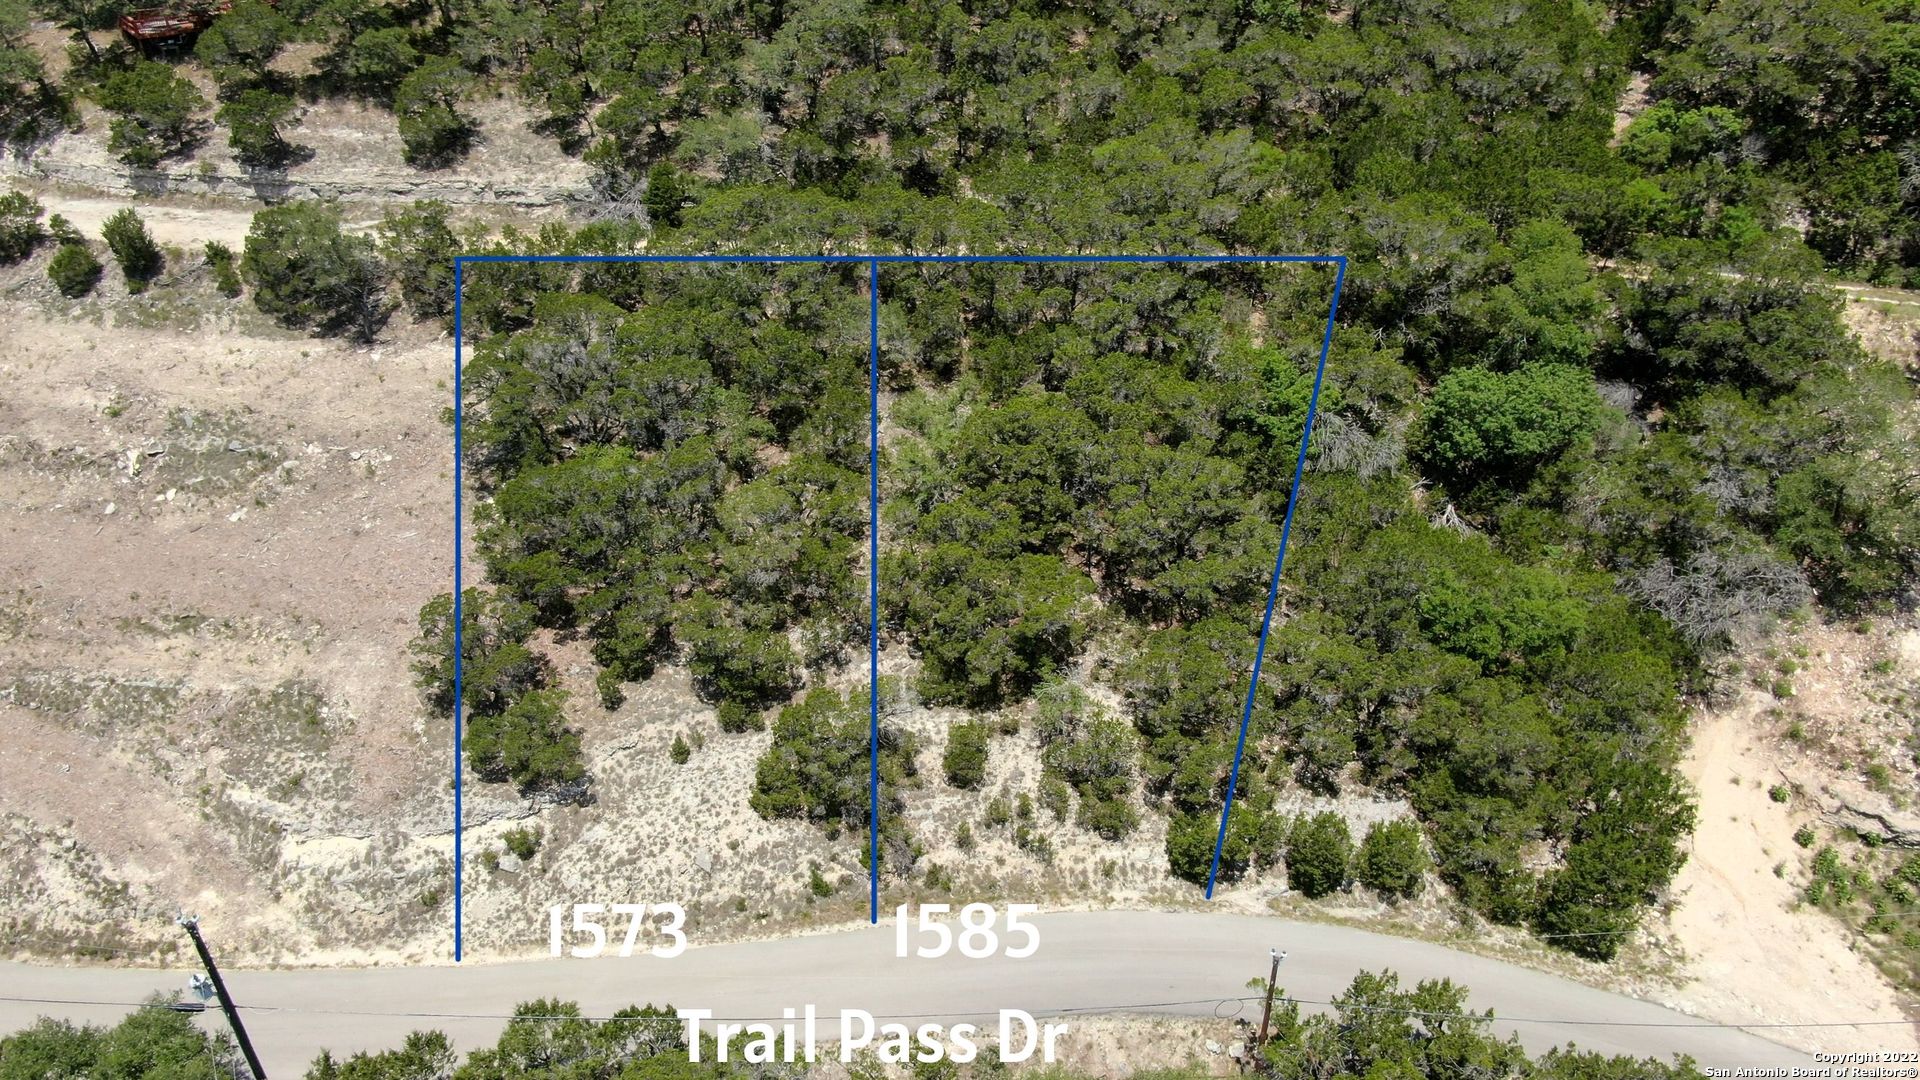 1573 Trail Pass Dr, Canyon Lake, TX 78133